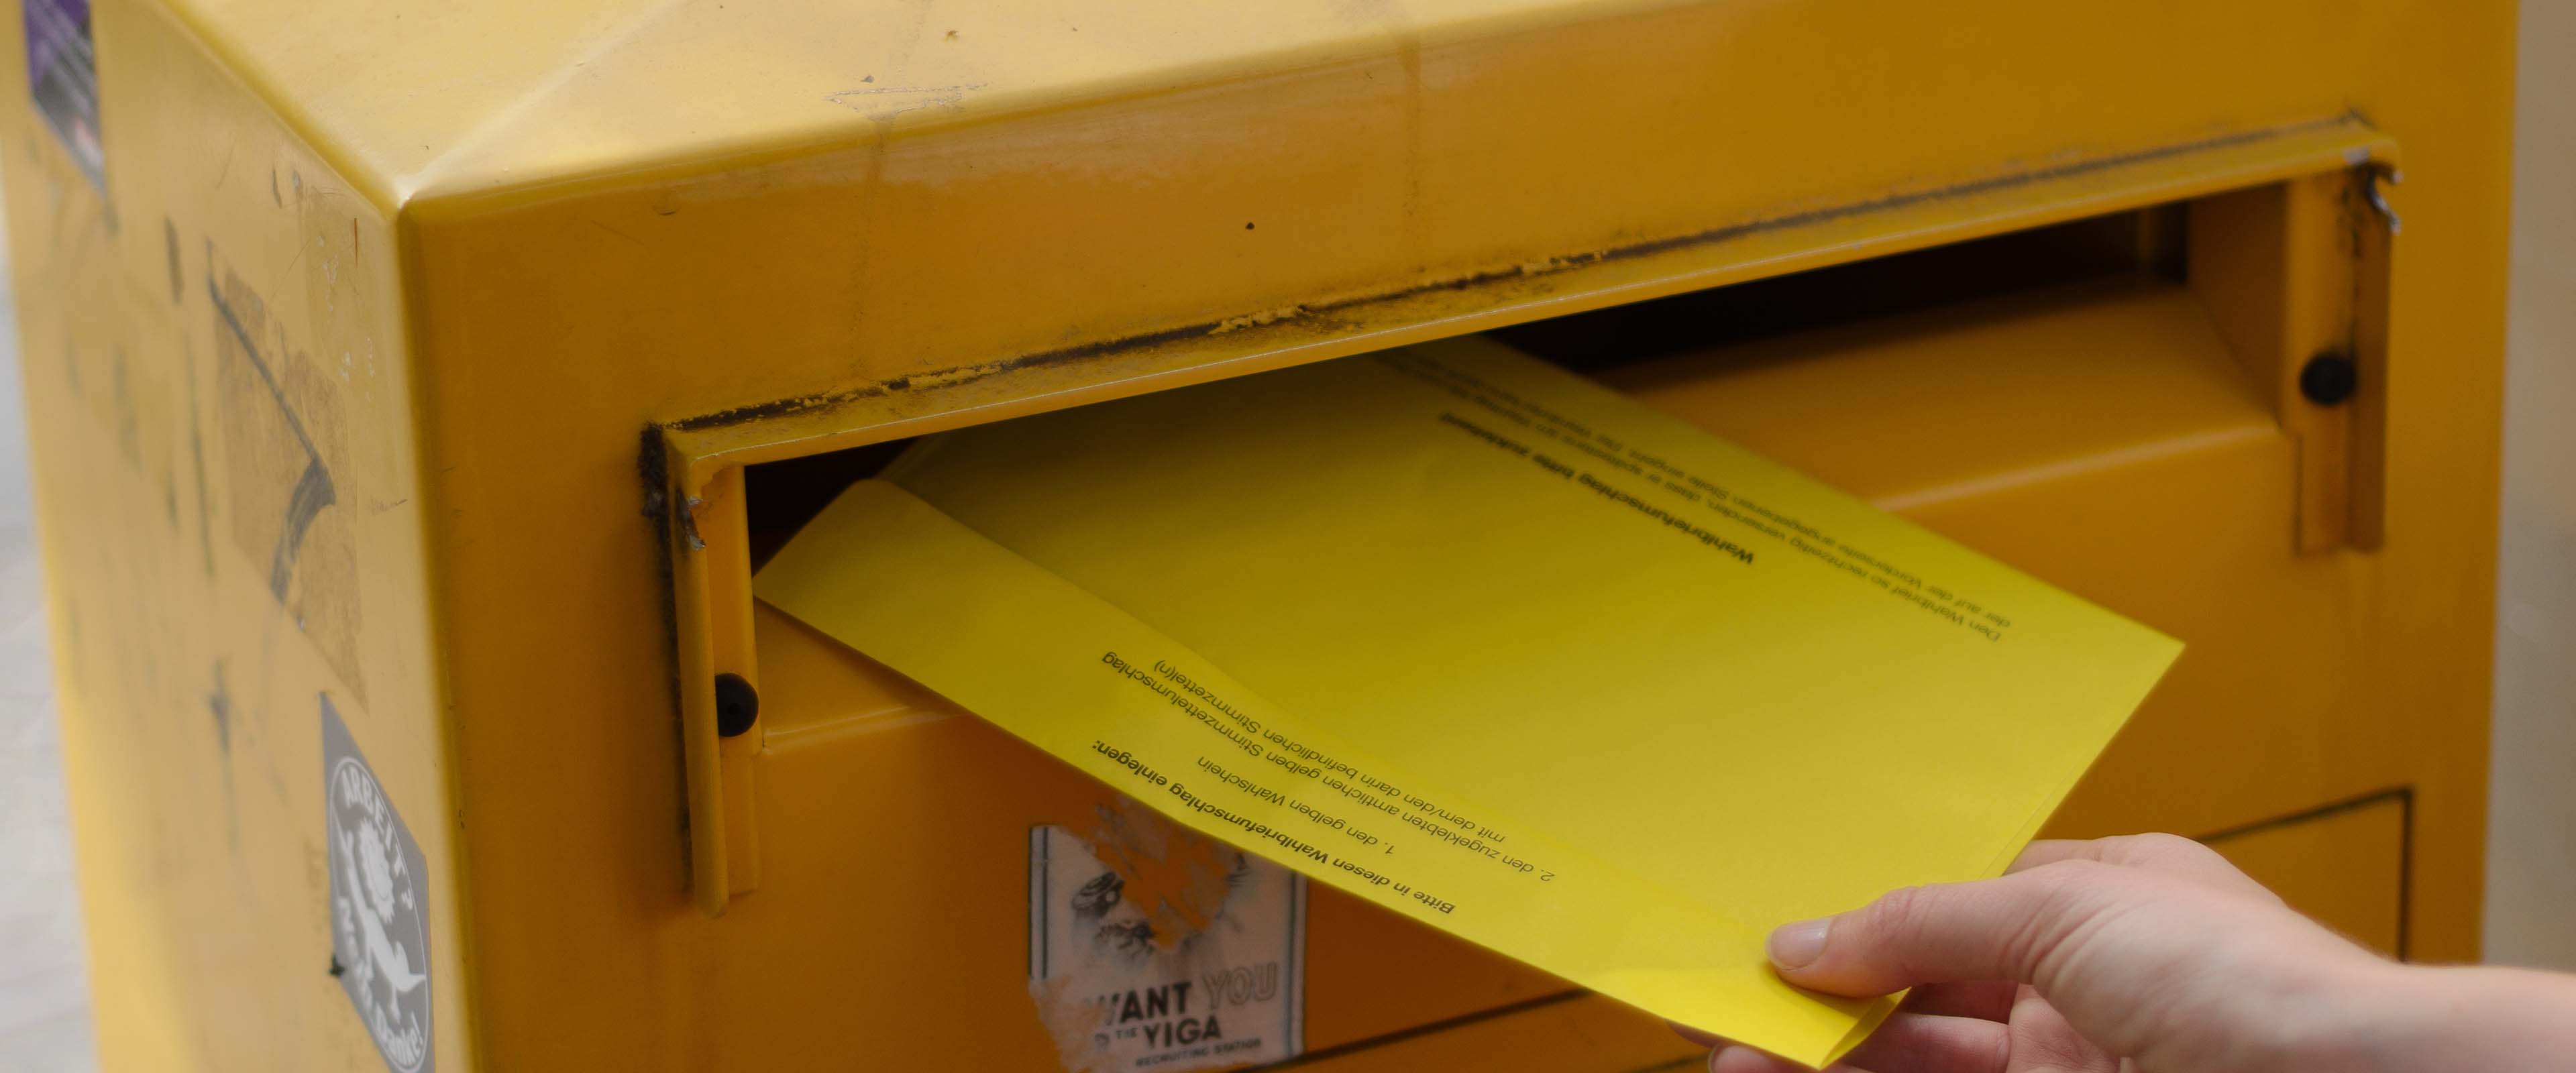 Gelber Briefkasten, in den ein Wahlbrief eingeworfen wird